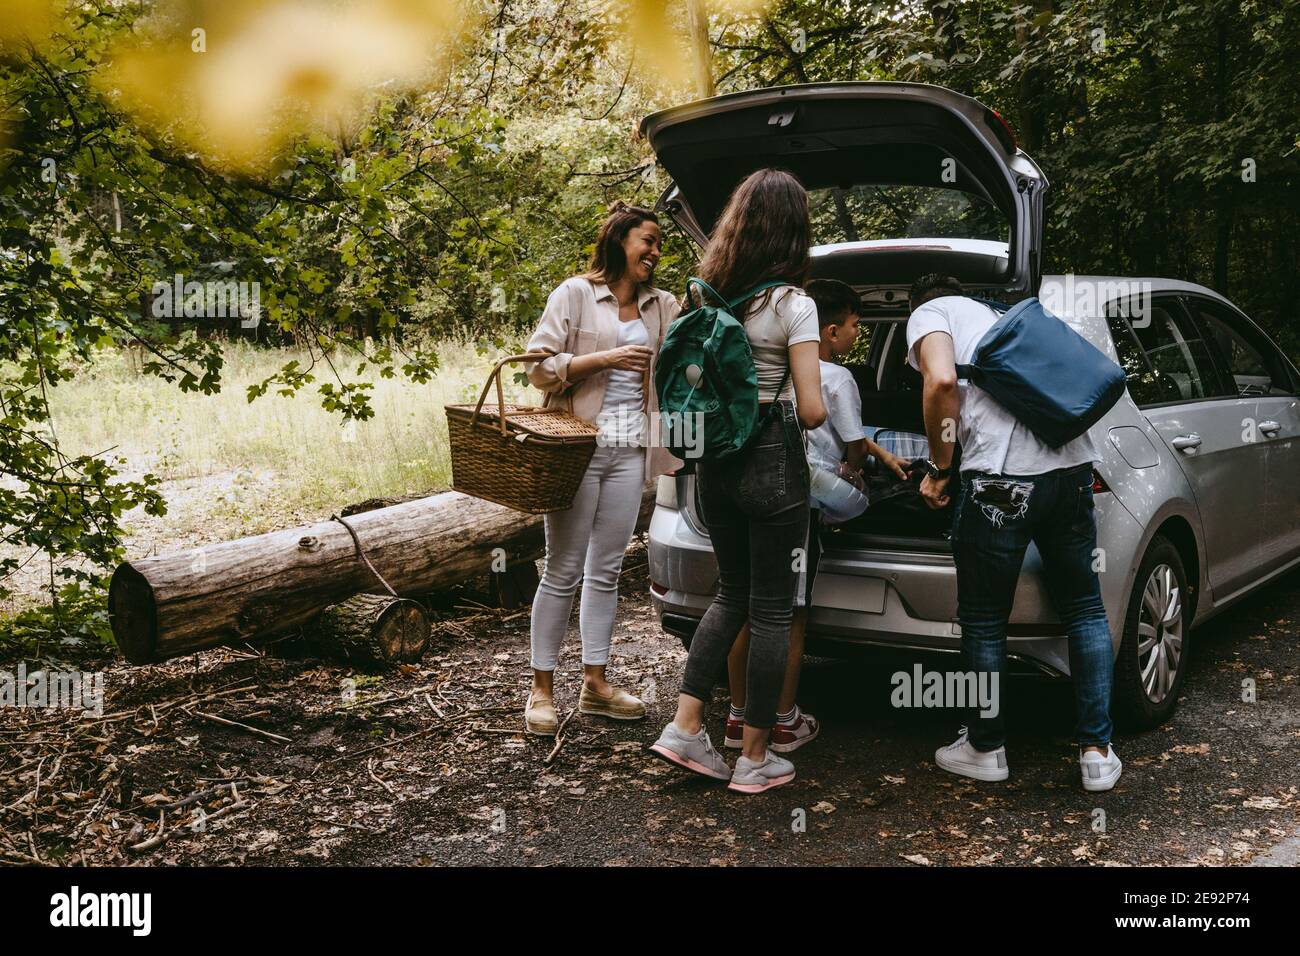 La famiglia rimuove le cose dal tronco dell'automobile nella foresta durante il picnic Foto Stock